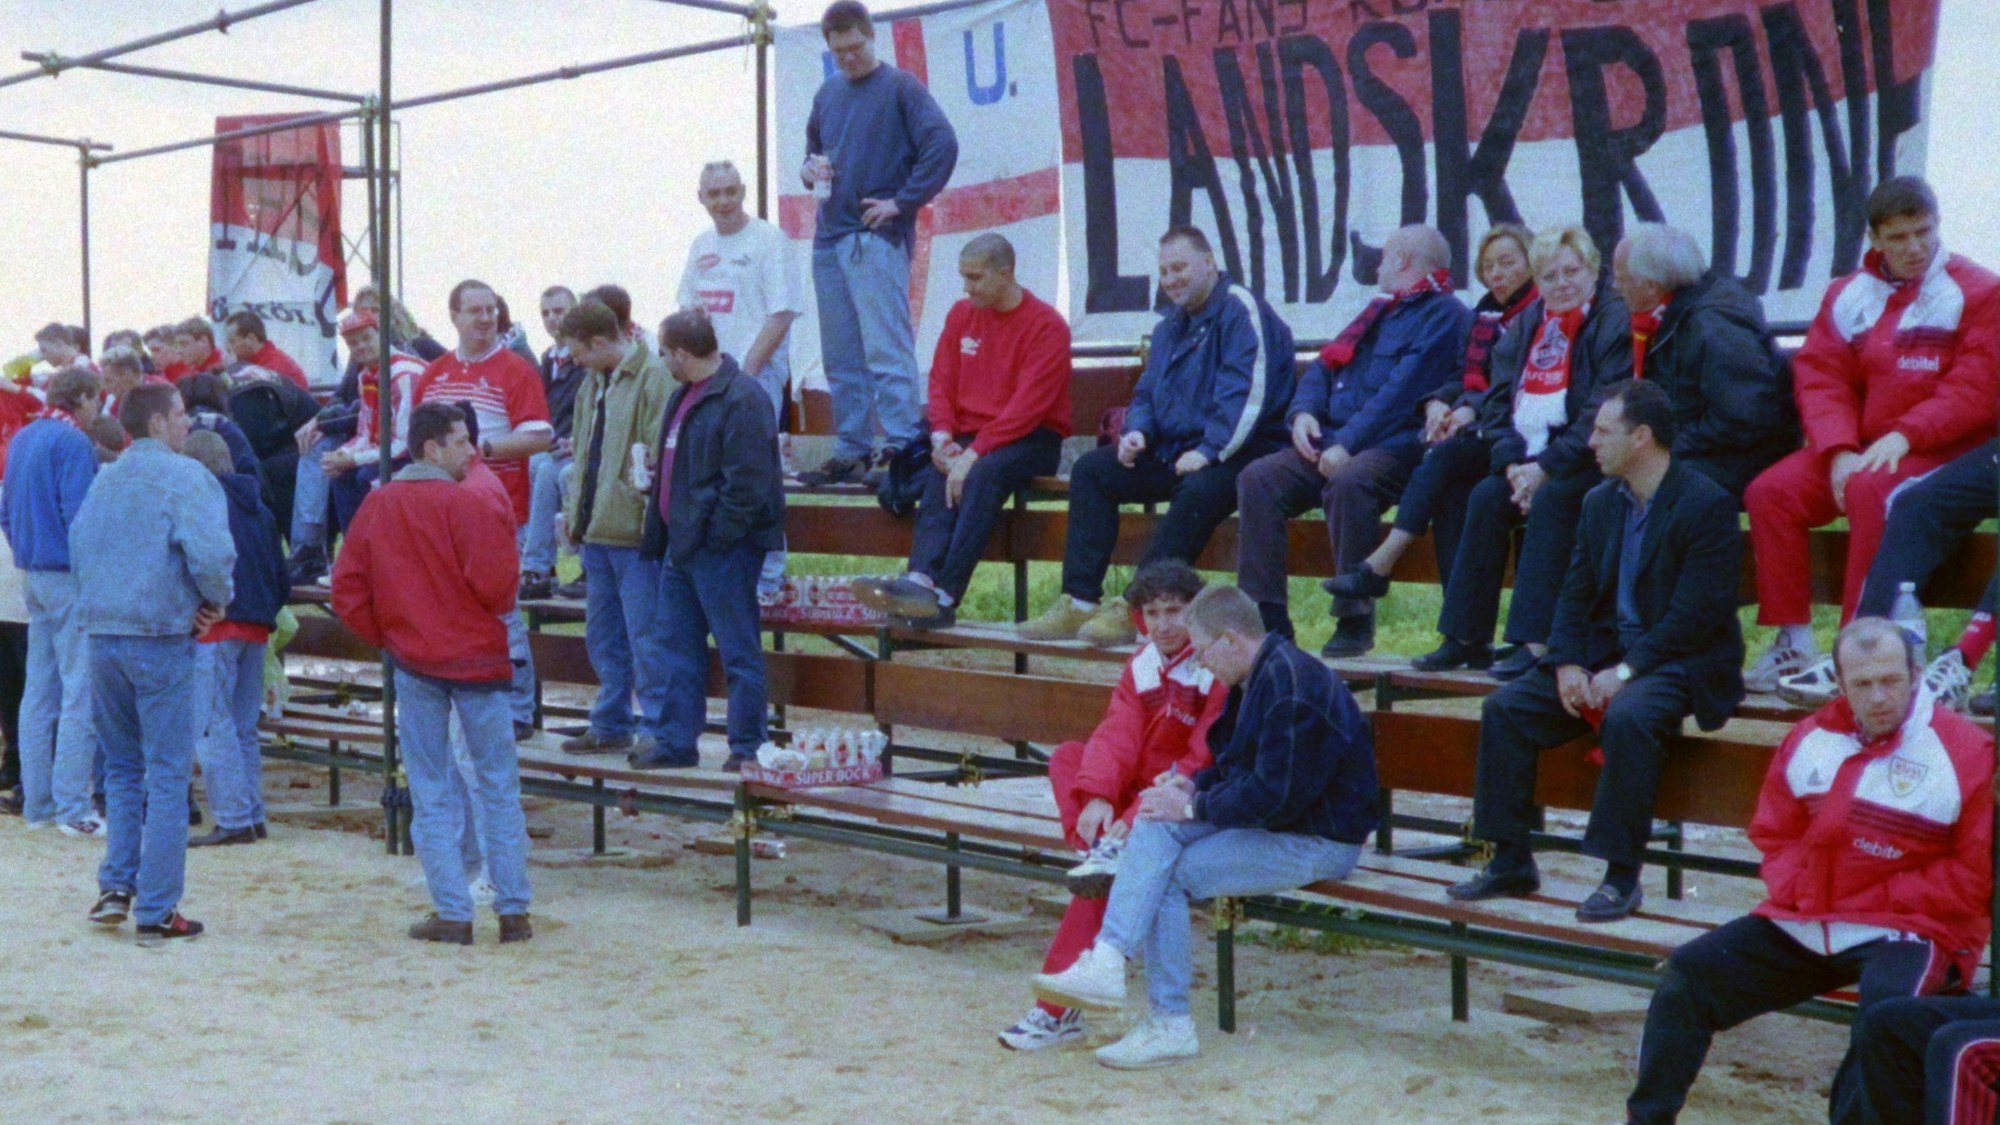 Mehrere Fußball-Fans teilen sich eine kleine Tribüne mit Funktionären des gegnerischen Vereins.